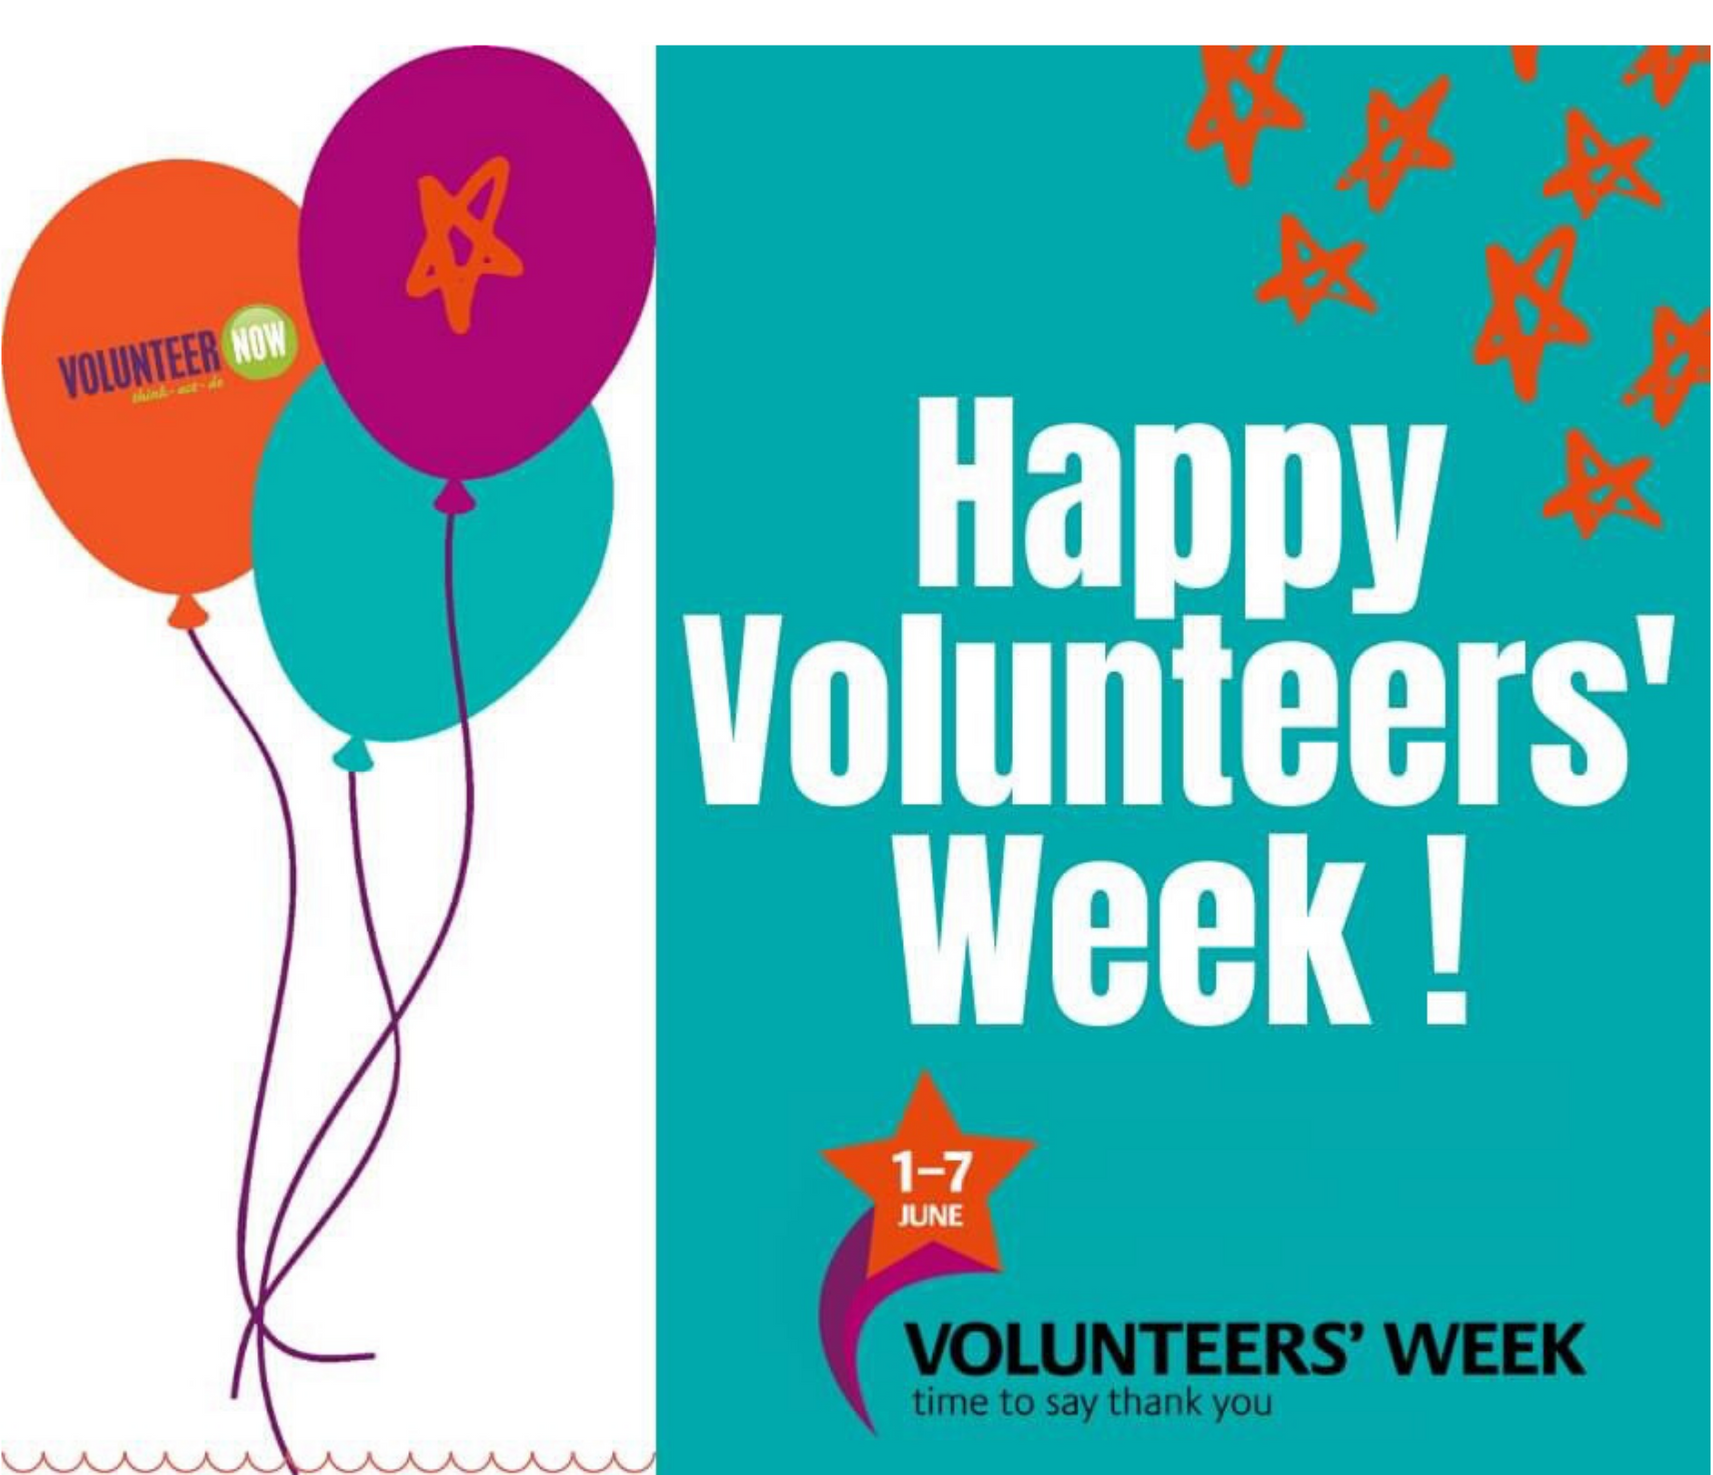 Happy Volunteers' Week 2020! Volunteer Now